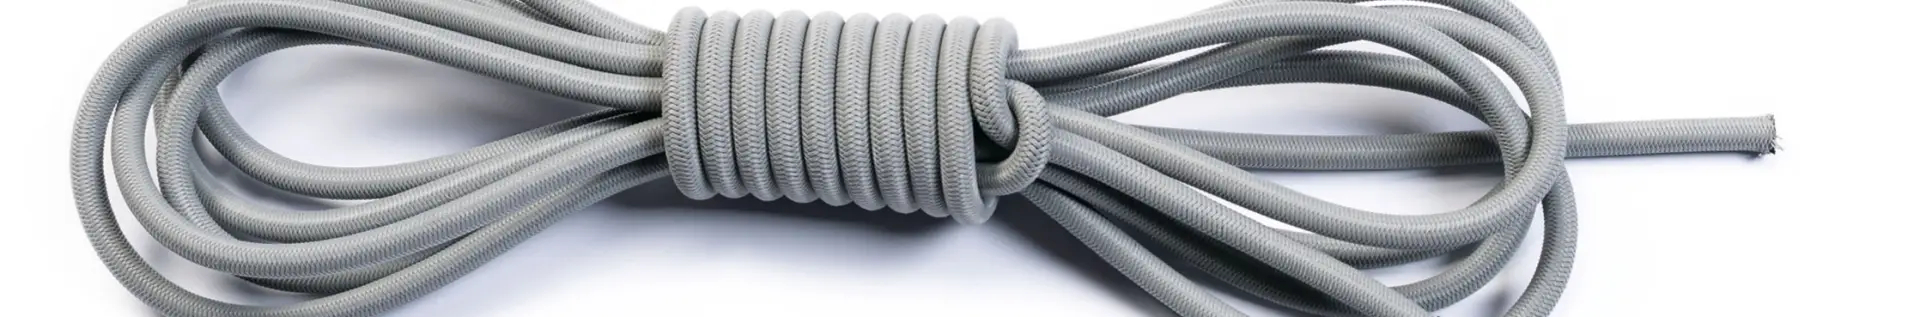 Corda elastica mm 8 per teli e reti piscine - Cod. CO008EP